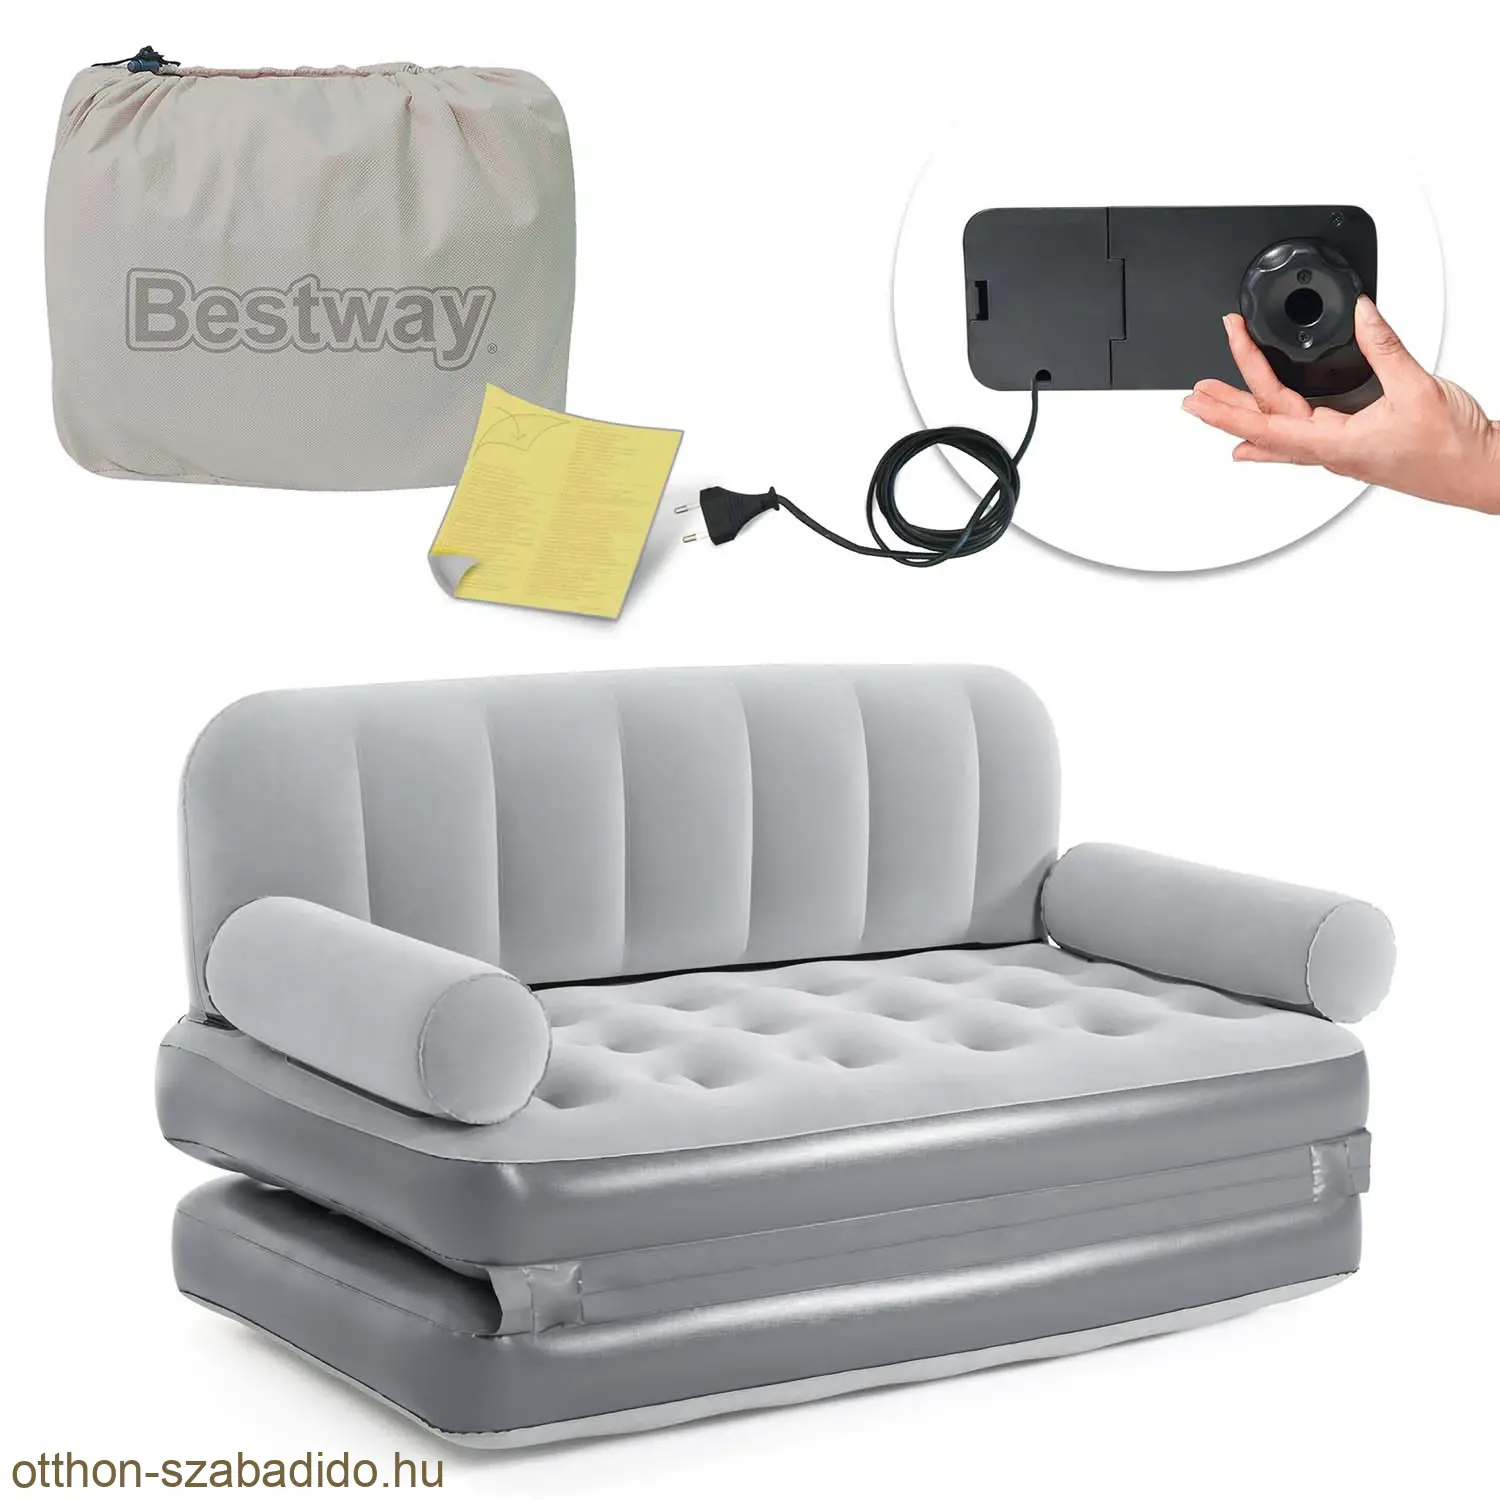 Bestway kétszemélyes felfújható kanapé, ágyazható,beépített elektromos pumpával